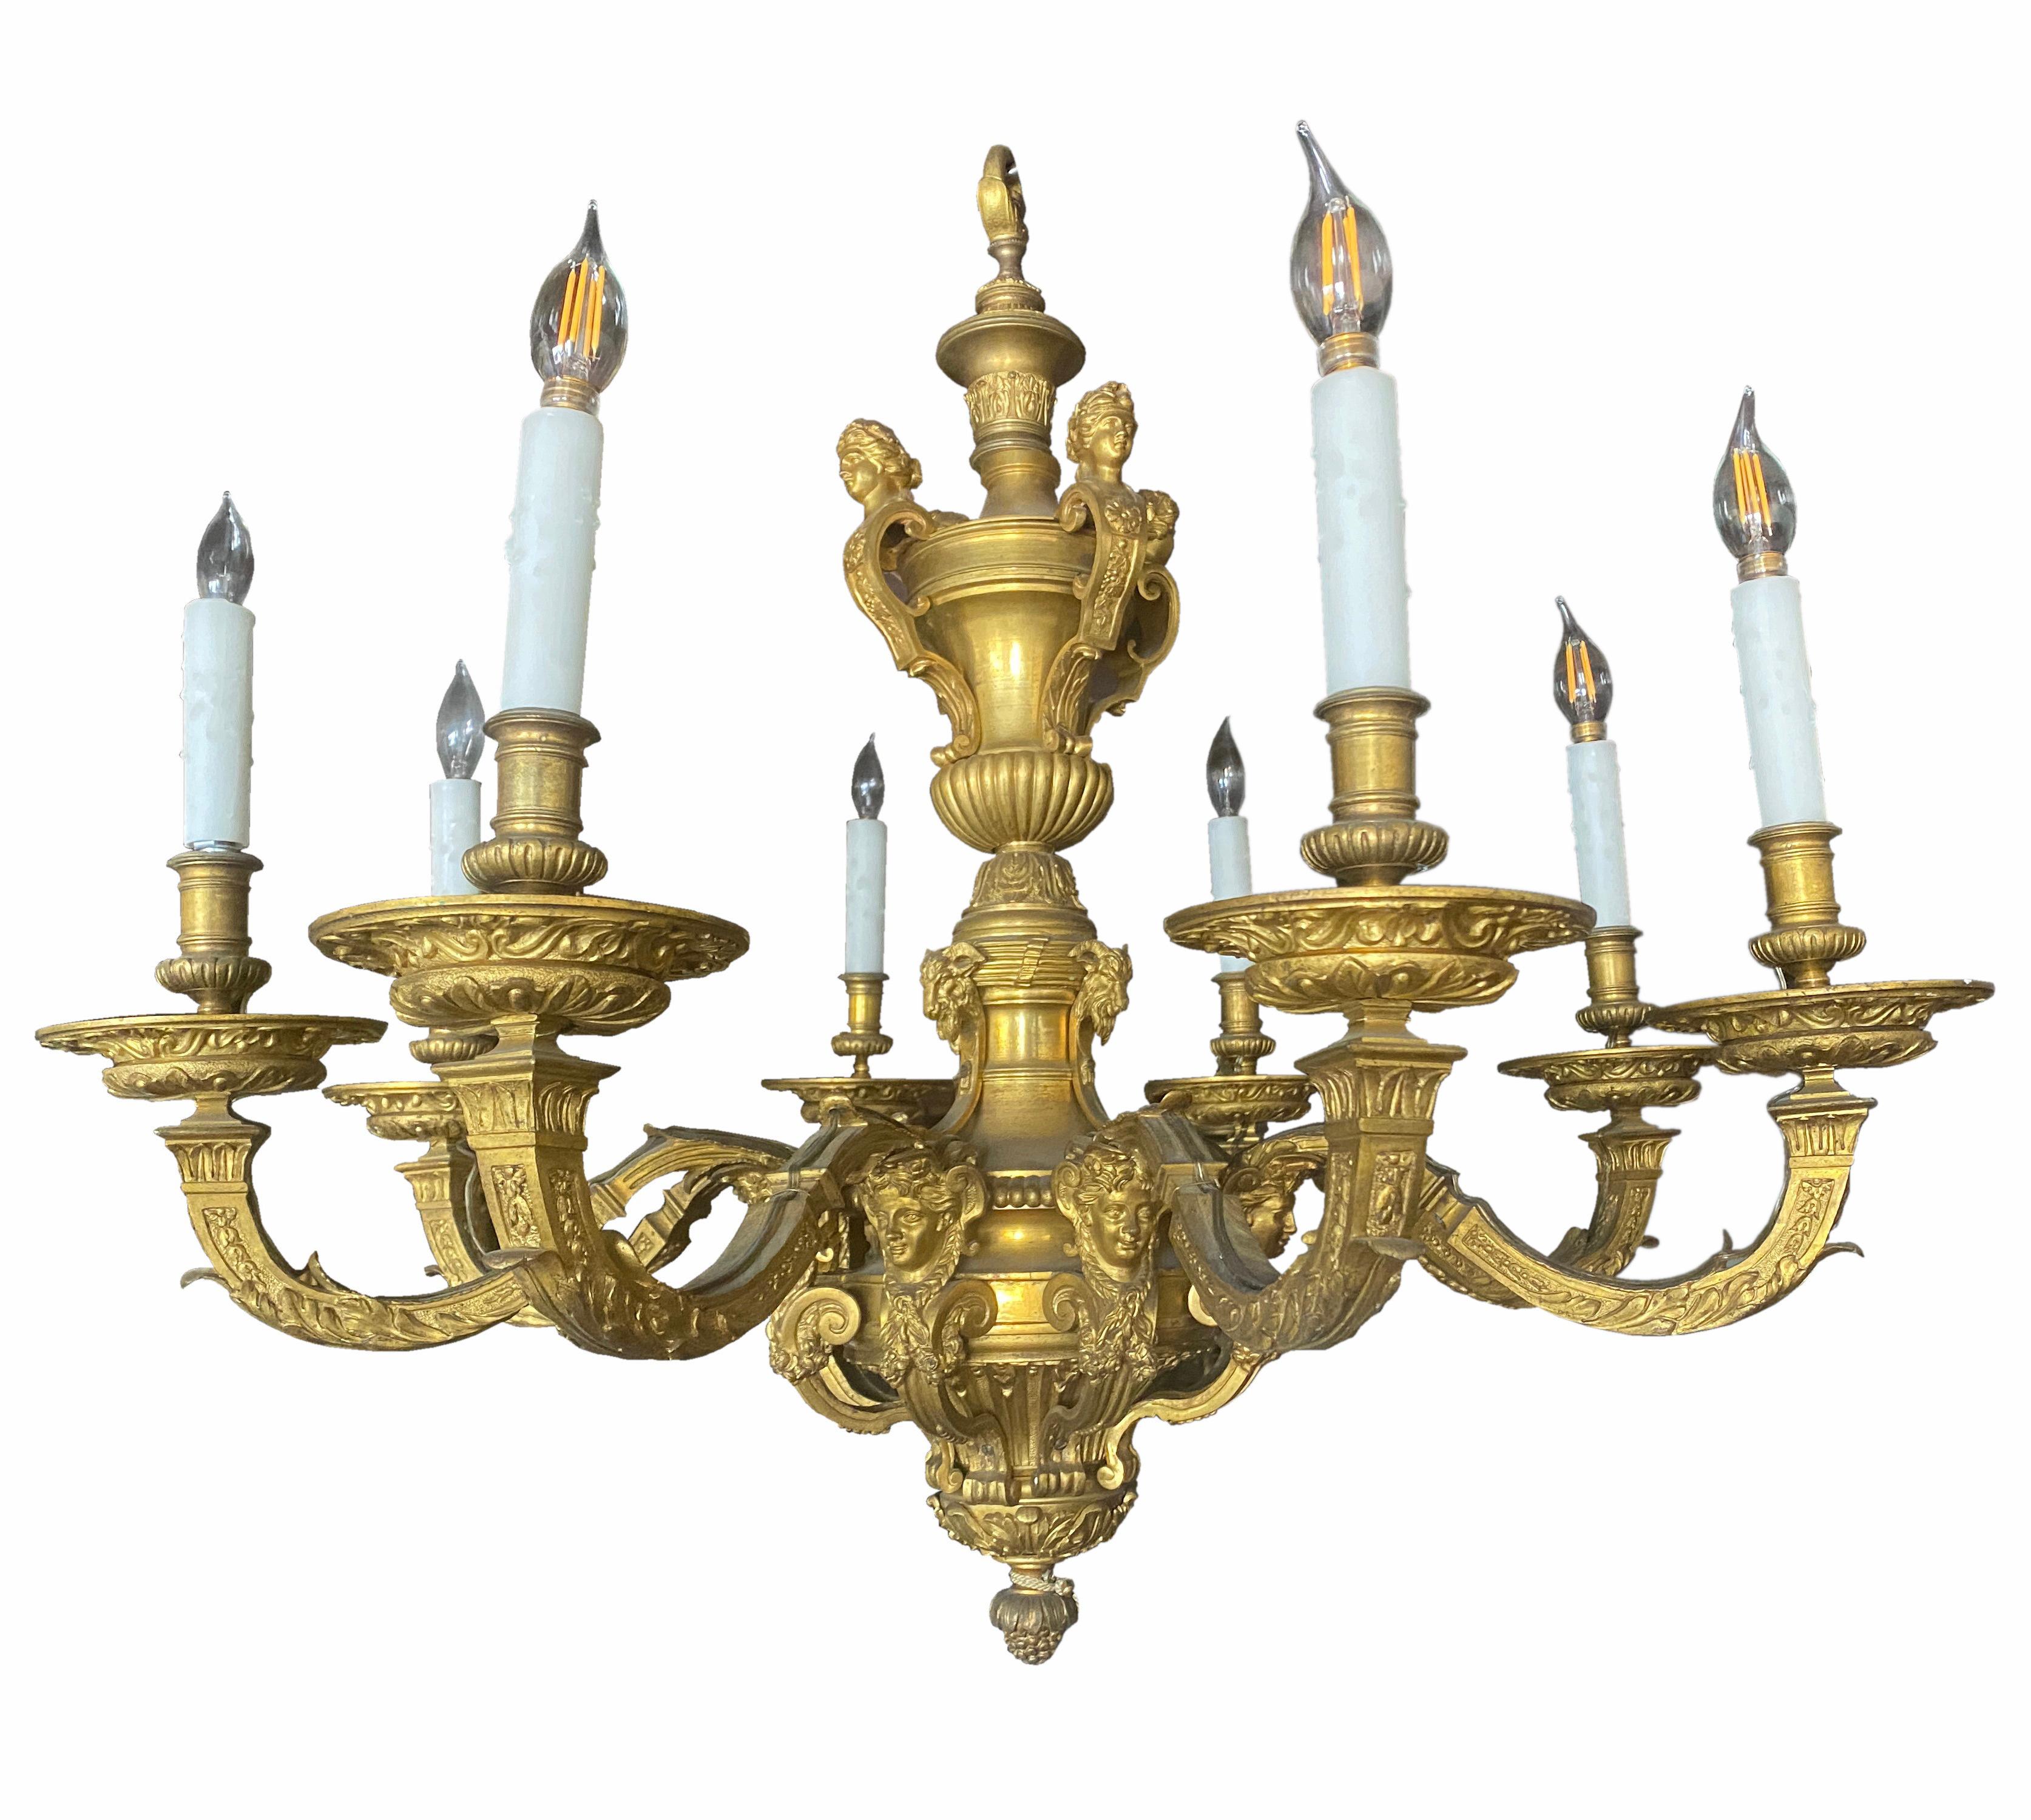 Lustre de style Louis XVI en bronze doré à huit lumières, d'après le modèle d'André-Charles Boulle,
Français, 19ème siècle. 
La tige balustre en forme d'urne est surmontée de termes putto, la partie inférieure étalée présente deux rangées de